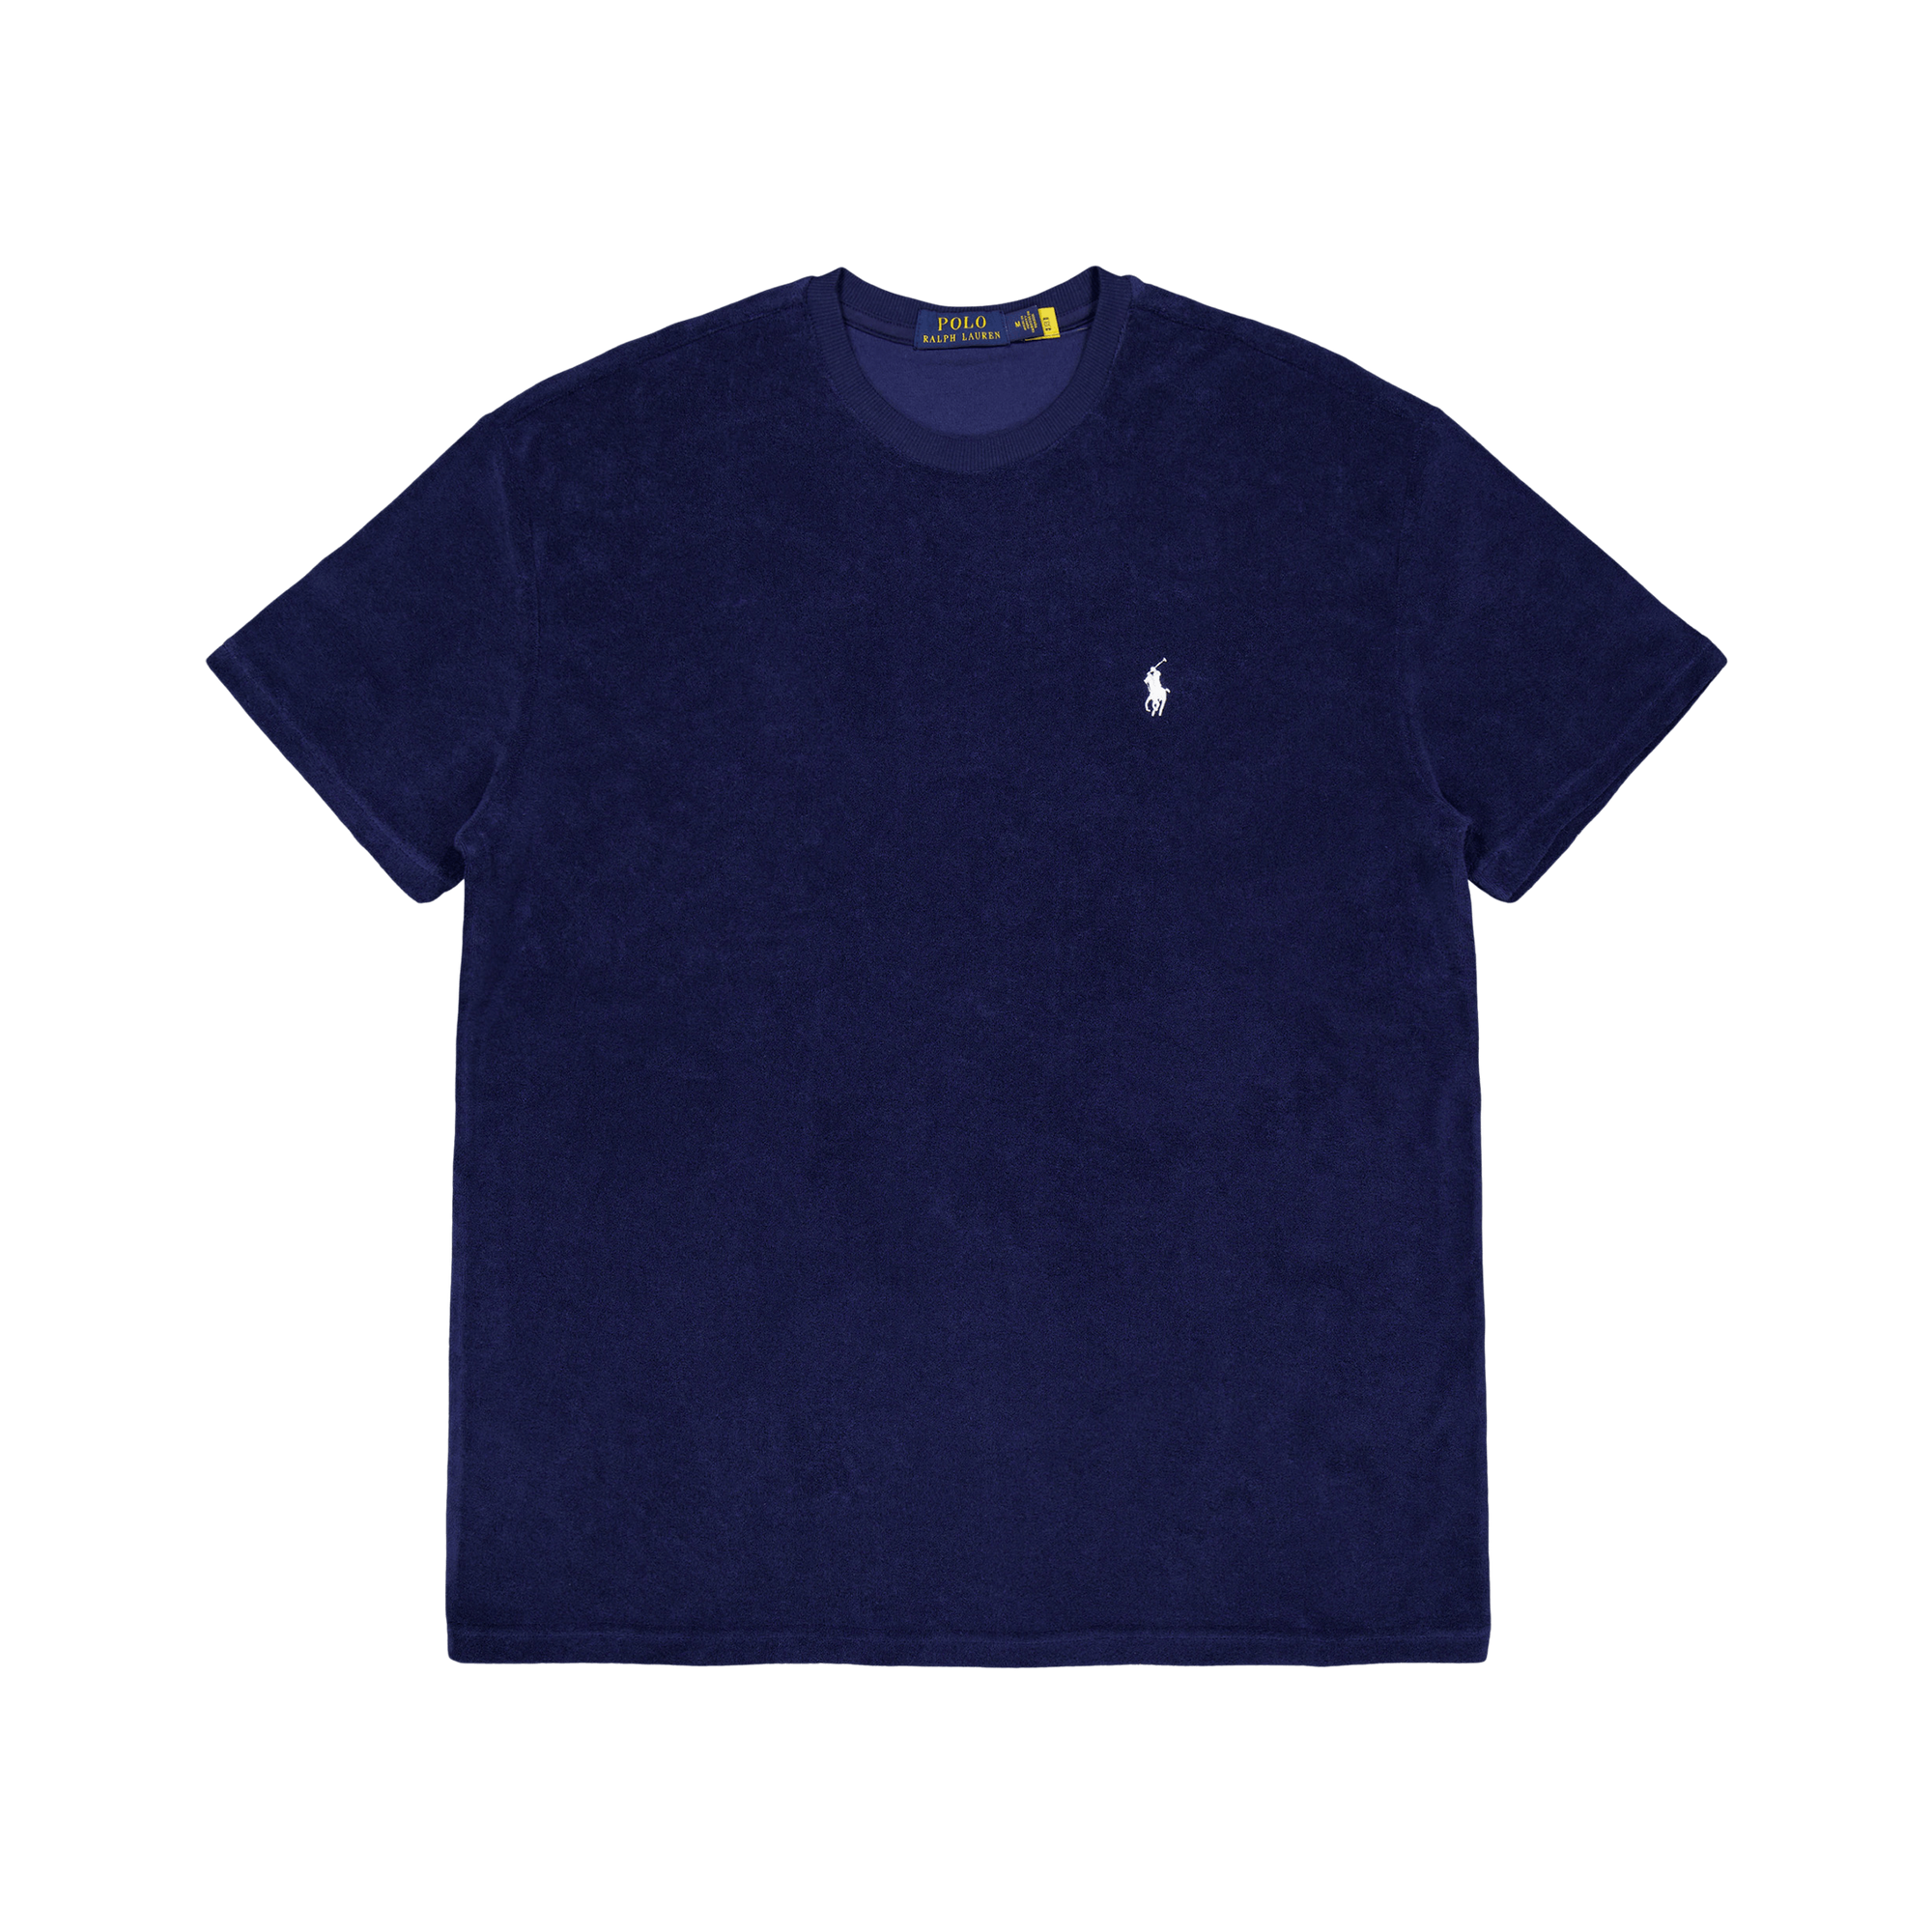 Cotton Terry S/s T-shirt Newport Navy